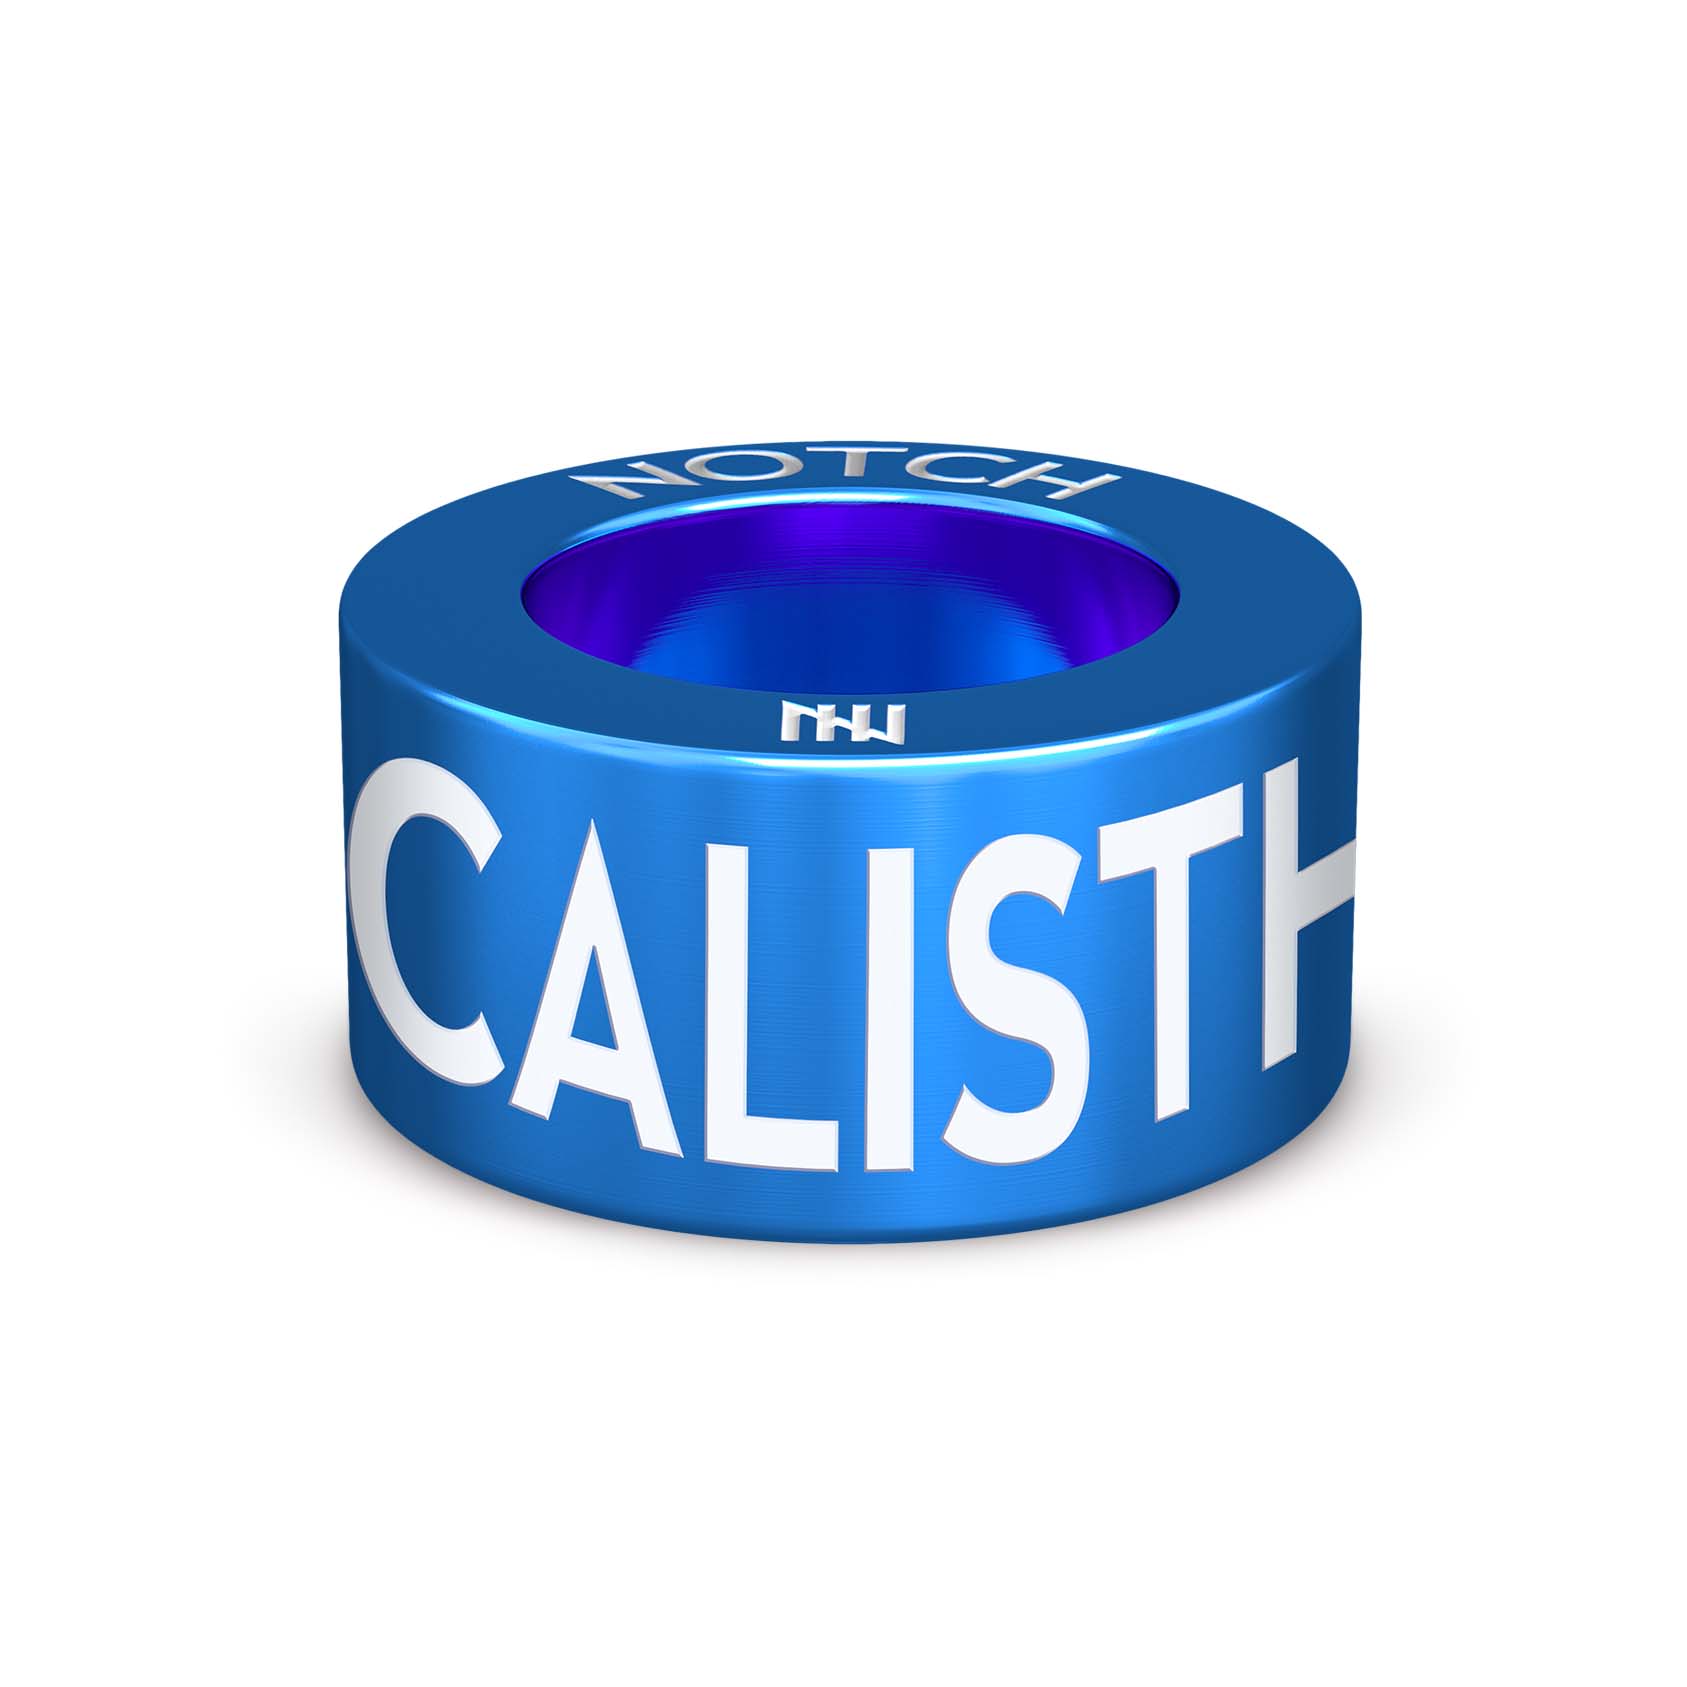 Calisthenics NOTCH Charm (Full List)